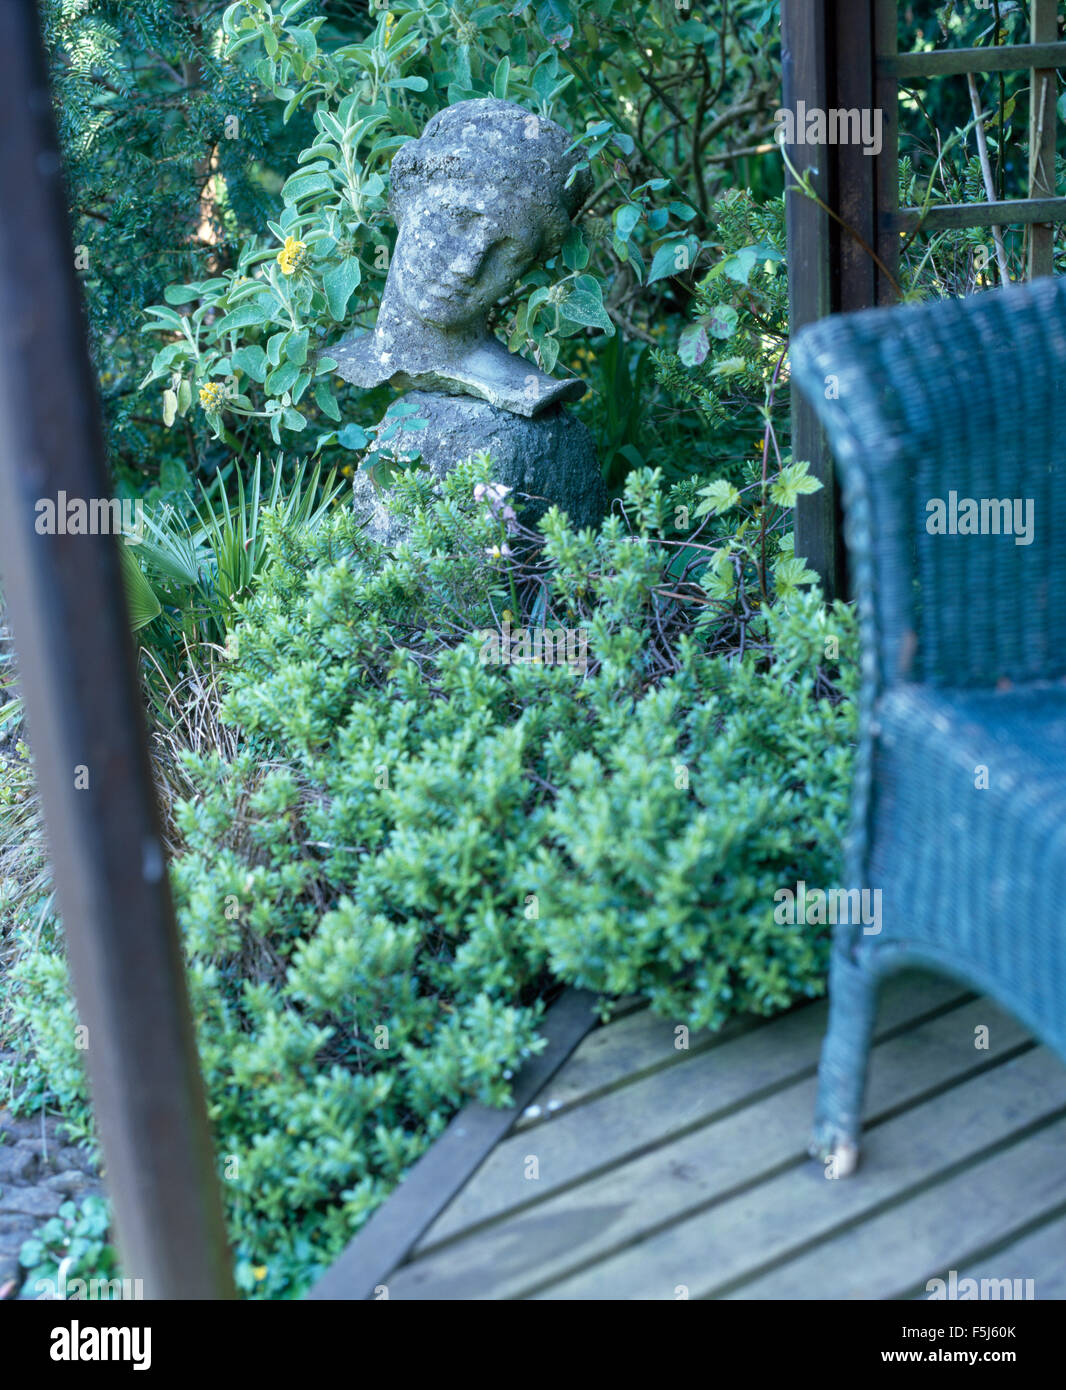 Dipinto di blu sedia in vimini su decking accanto a una testa in pietra sotto-coltivati con piante verdi in un giardino estivo Foto Stock